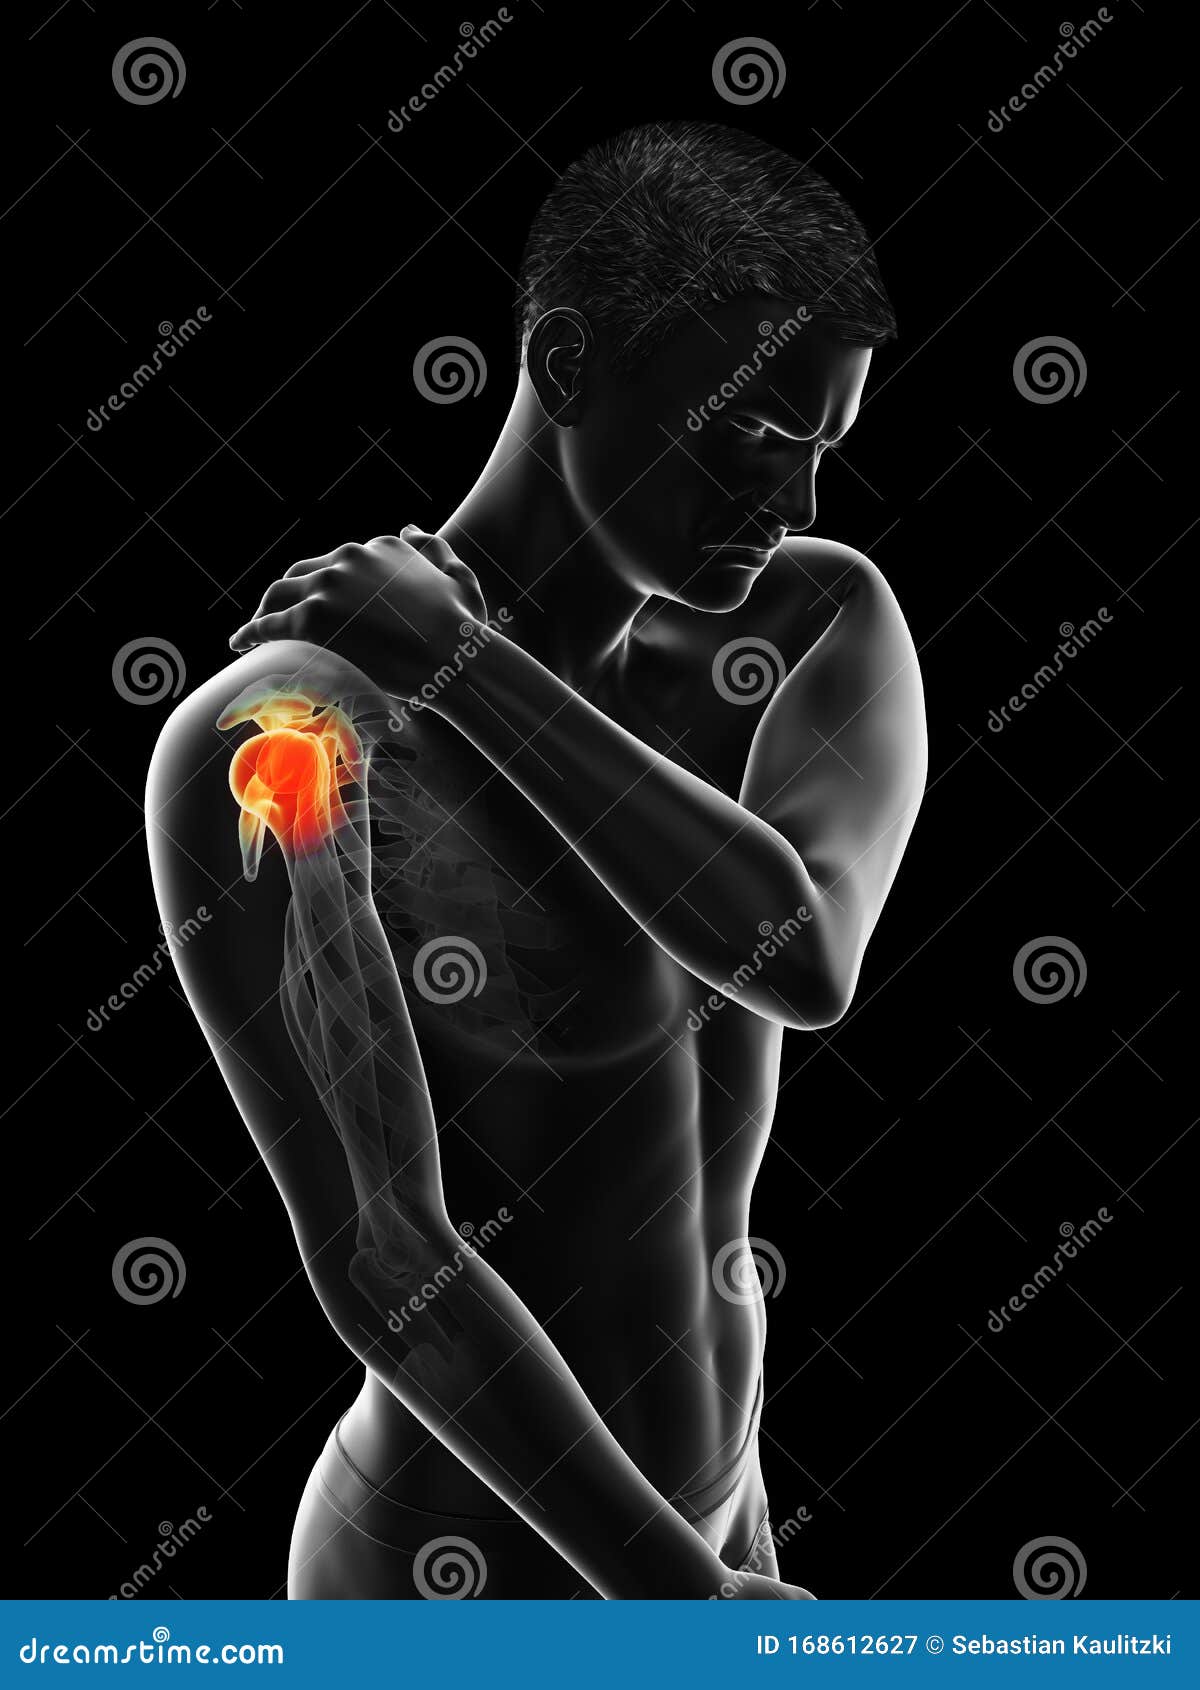 a mans painful shoulder